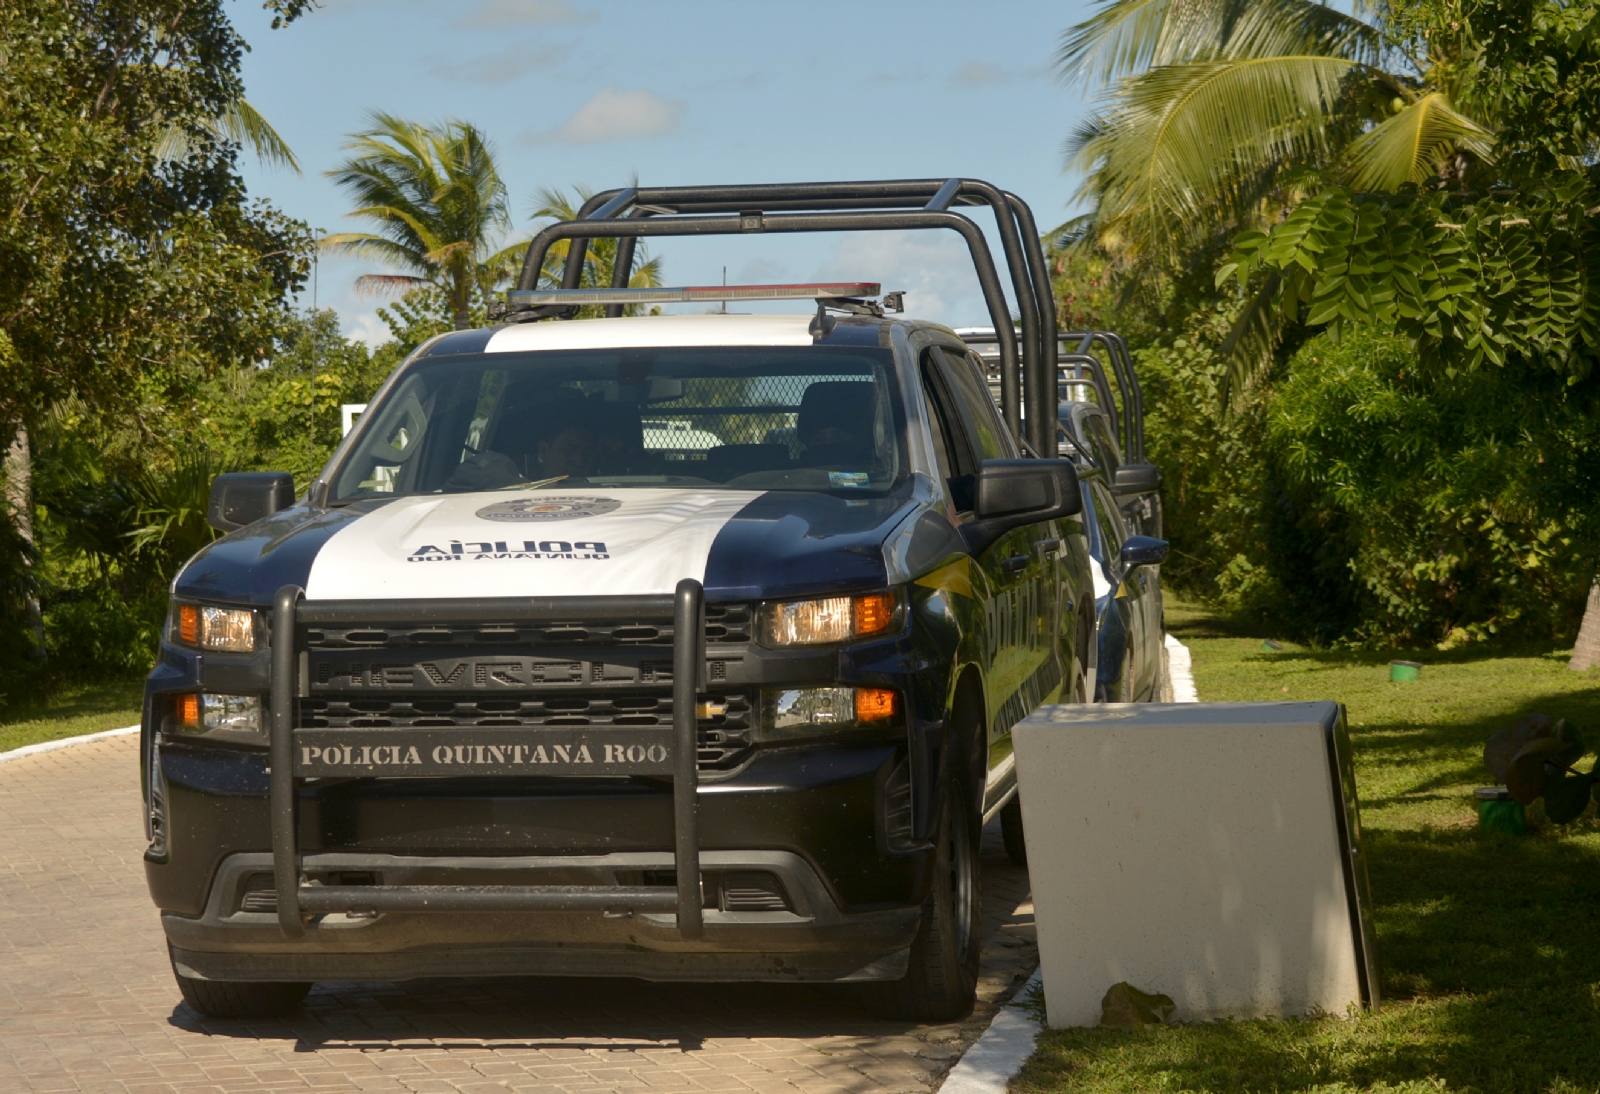 50% de los policías en Isla Mujeres carecen de certificación en seguridad